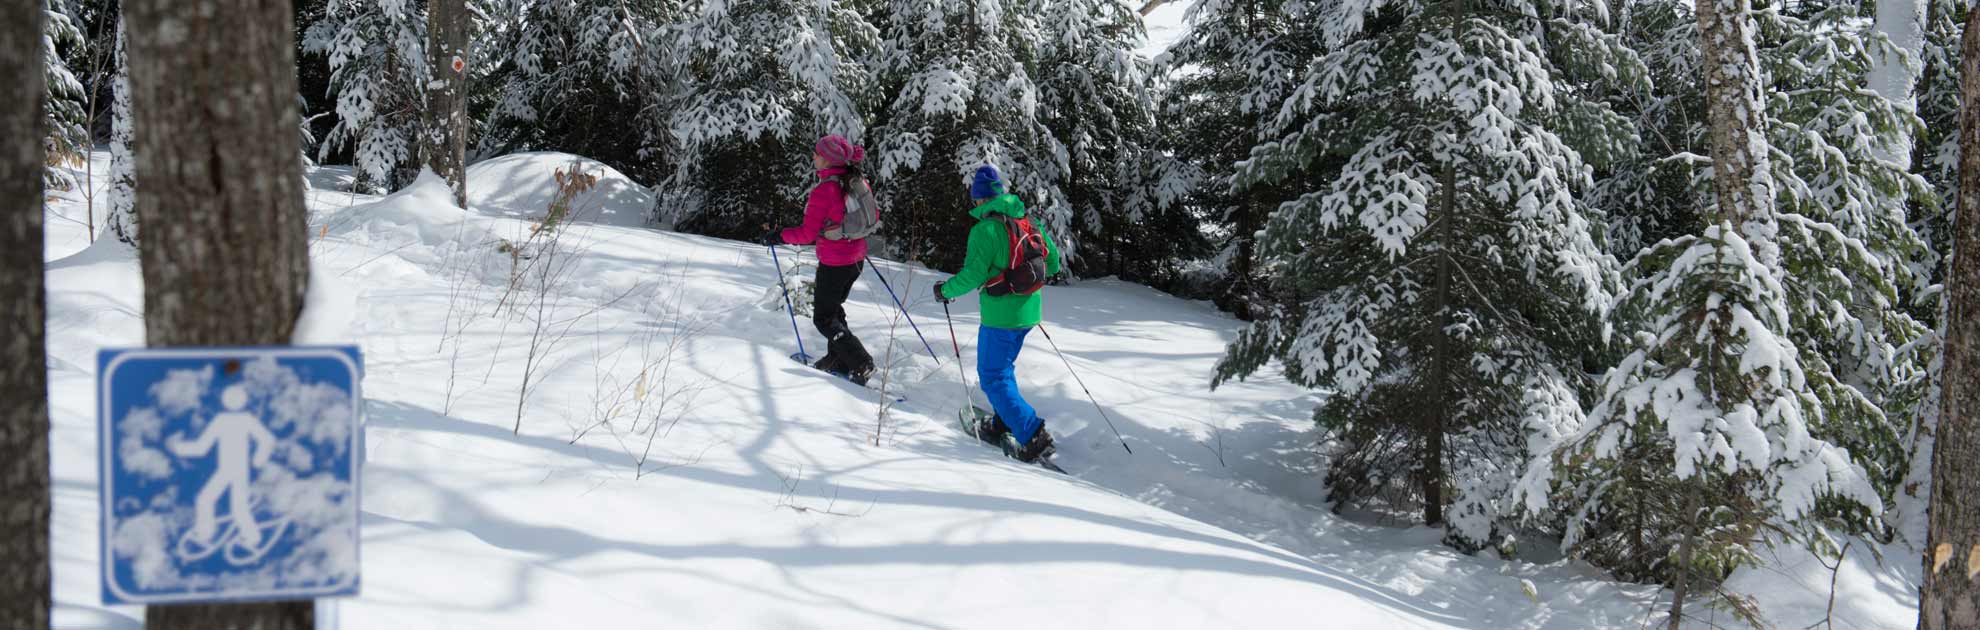 Les meilleurs endroits pour faire du ski de fond